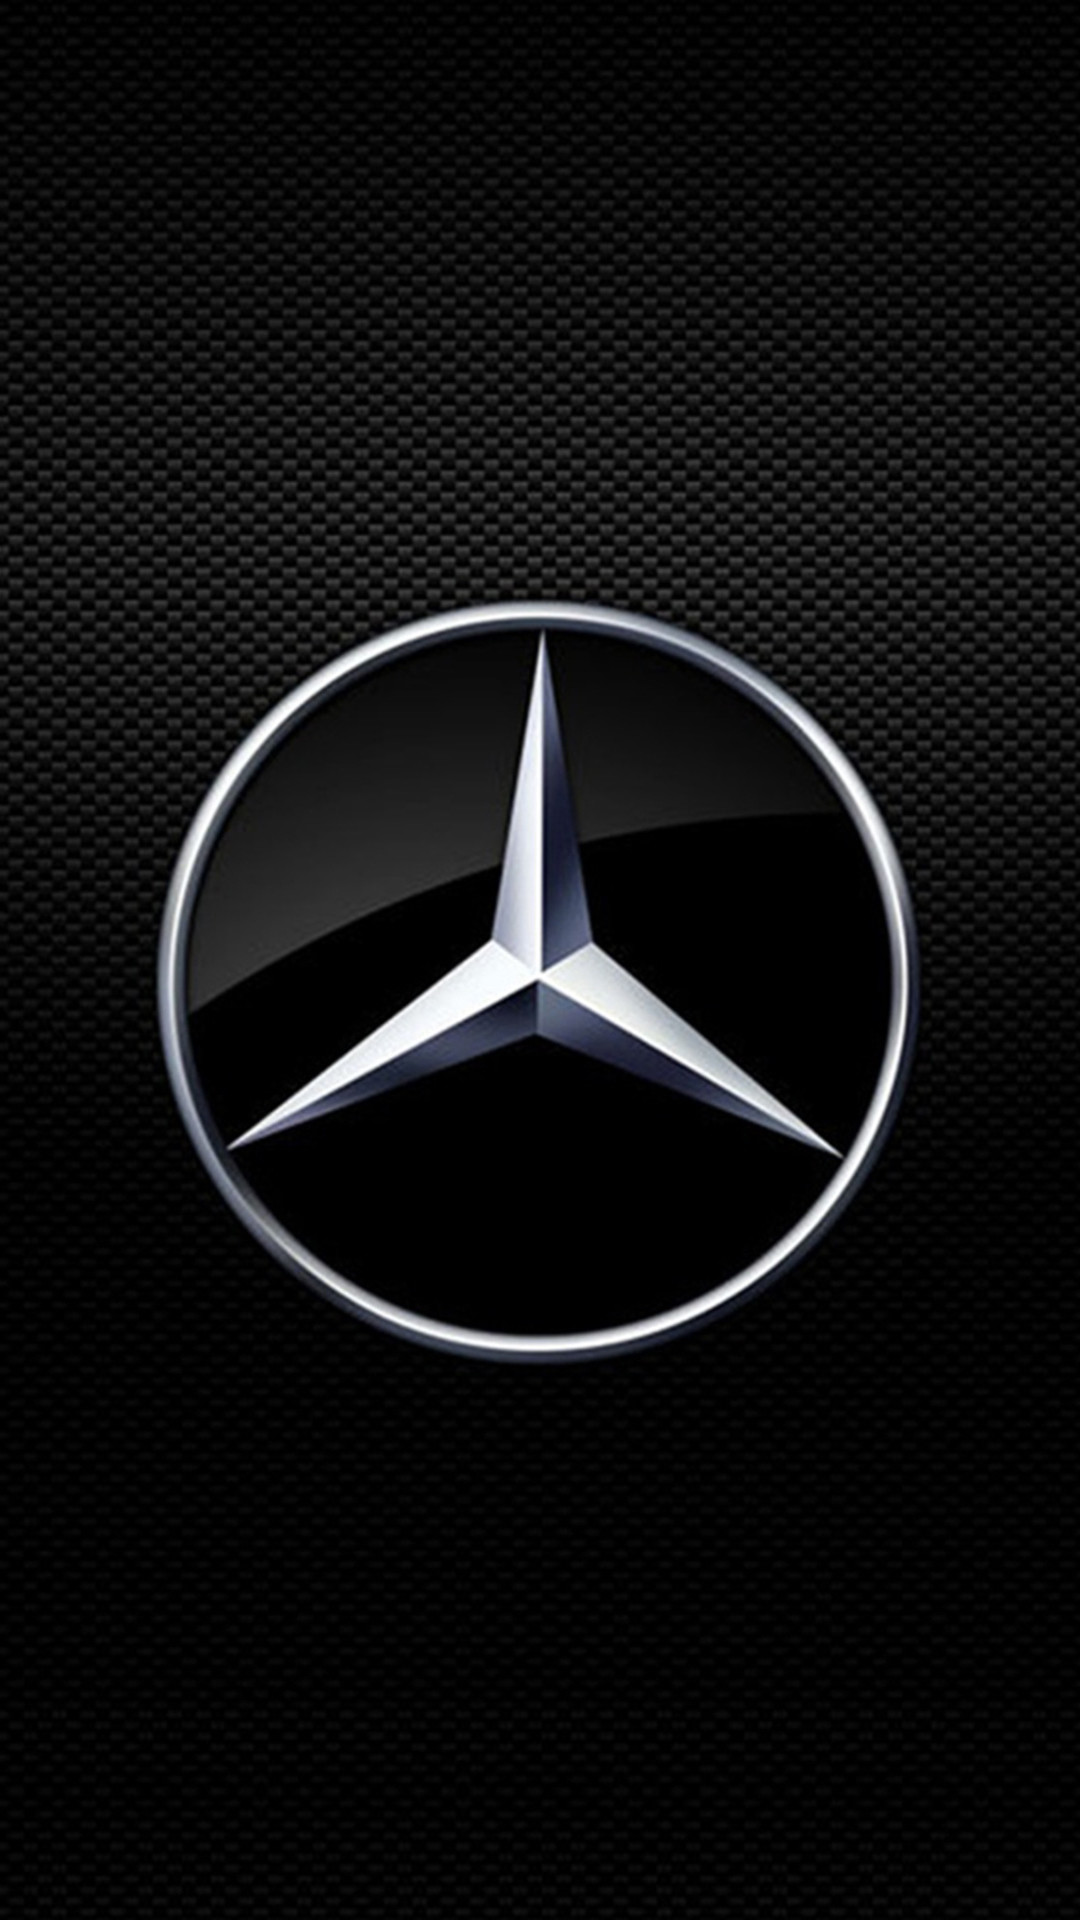 1080x1920 Mercedes-Benz symbol